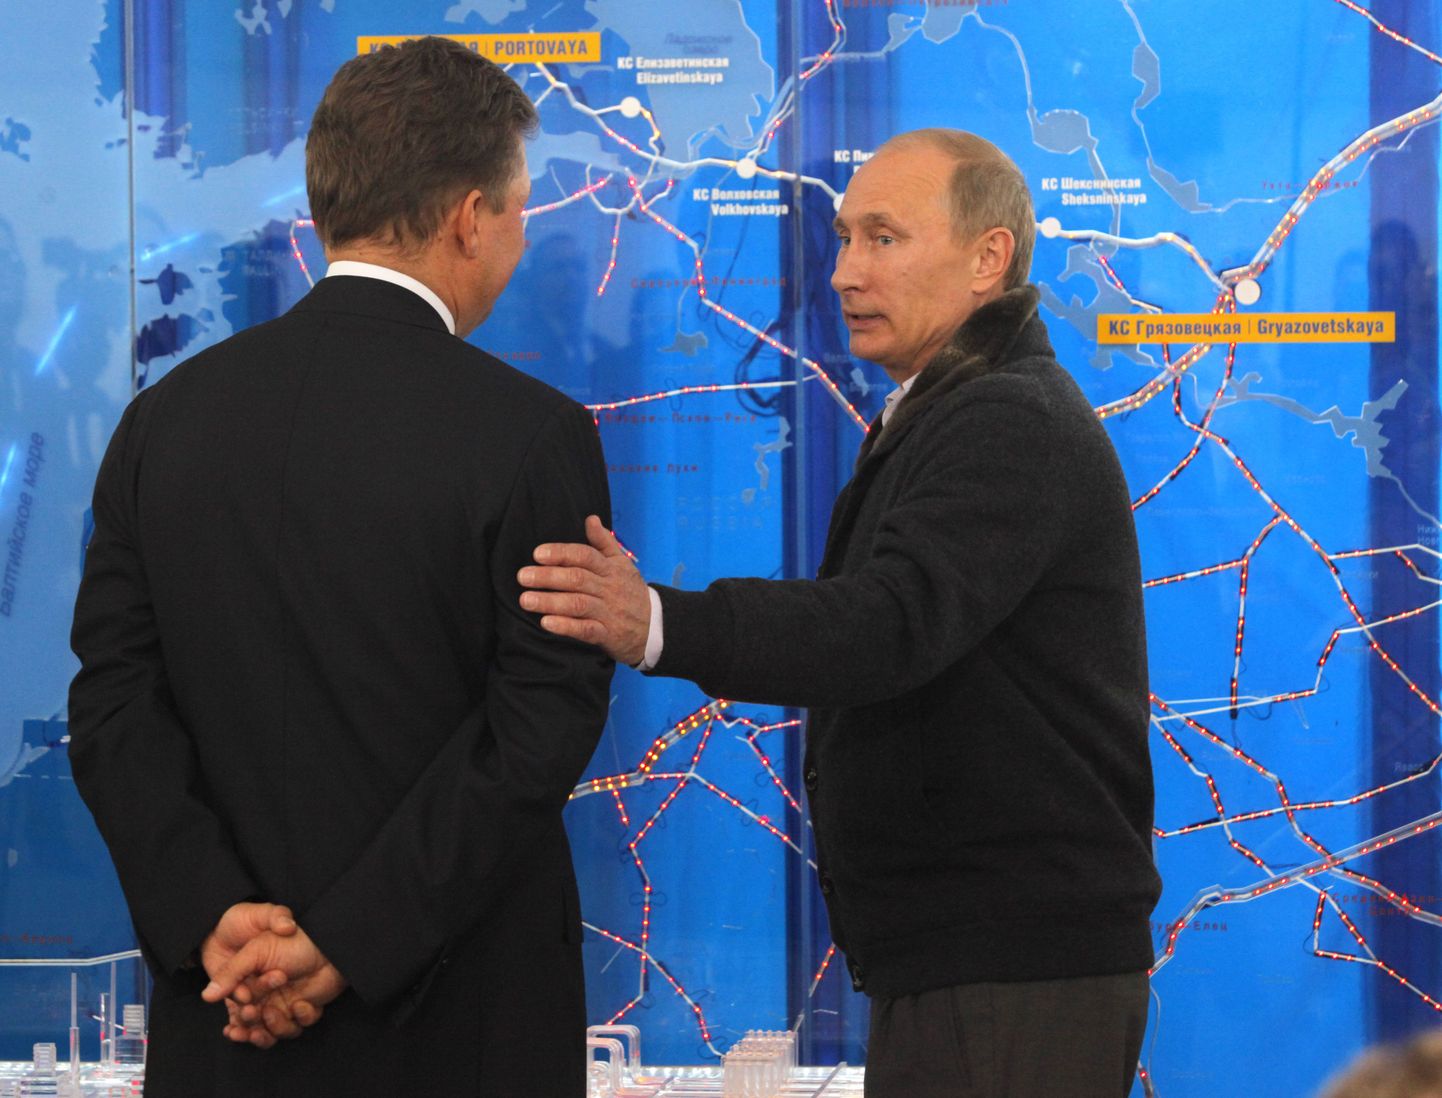 Vene peaminister Vladimir Putin (paremal) täna Gazpromi tegevjuhi Aleksei Milleriga Nord Streami käivitamise tseremoonial Portovaja lahe ääres.